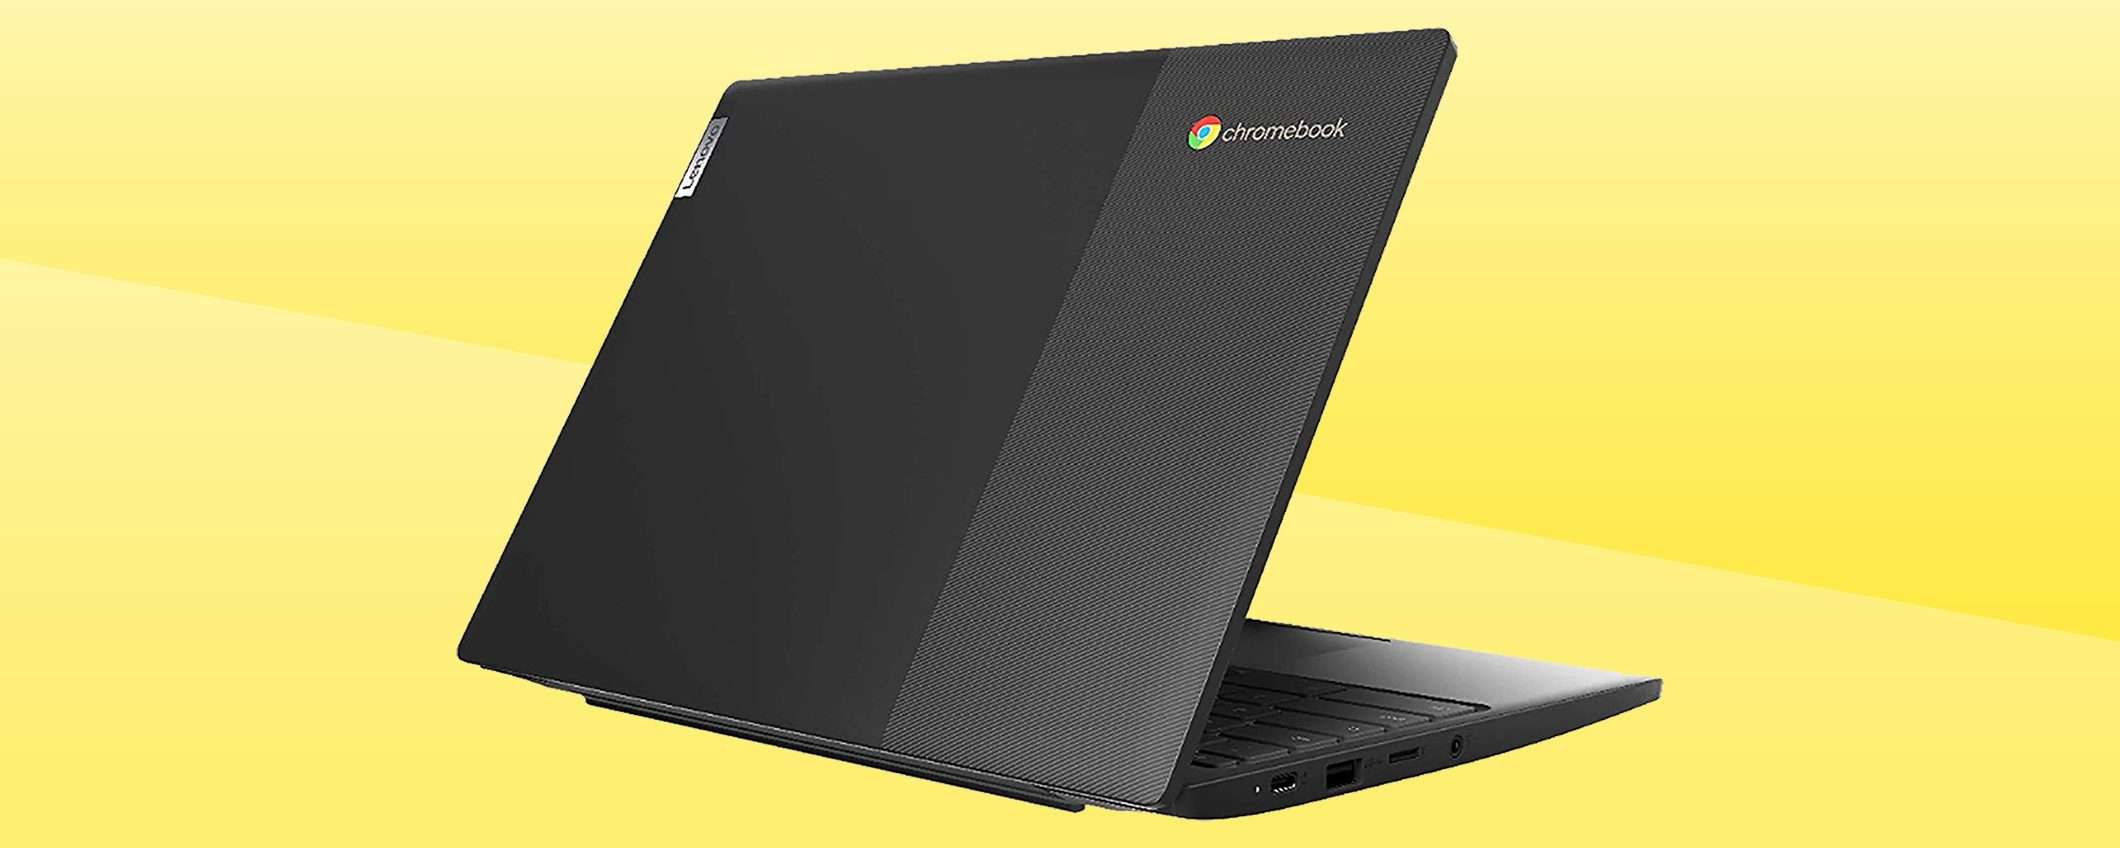 Lenovo IdeaPad 3 Chromebook a 114€: un affare